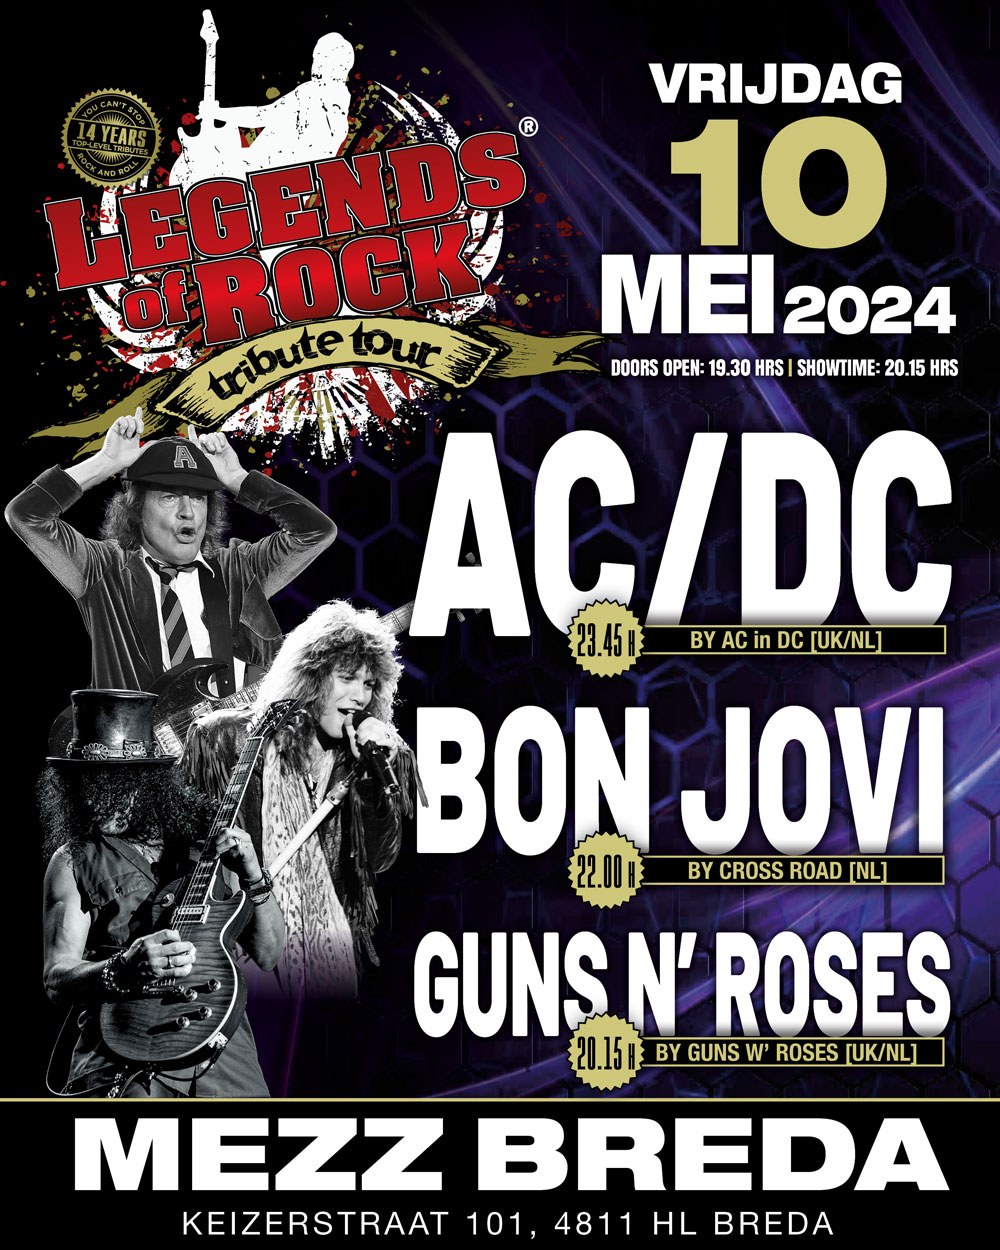 LEGENDS of ROCK Tribute Tour op vrijdag 10 mei 2024 in Poppodium Mezz Breda